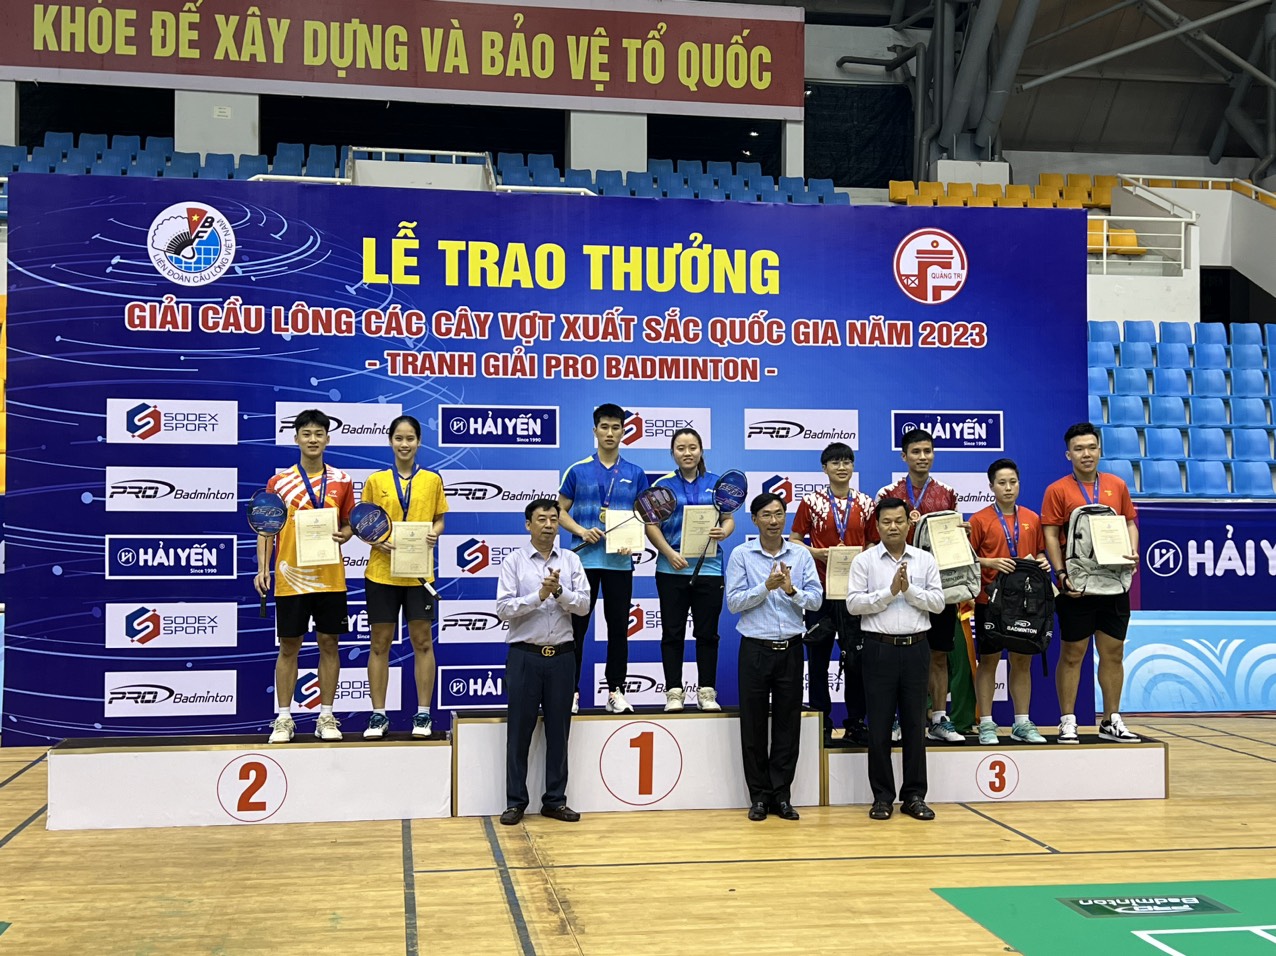 Lâm Đồng: Đoàn VĐV giành 1 HCV, HCB tại giải Cầu lông các cây vợt xuất sắc Quốc gia năm 2023